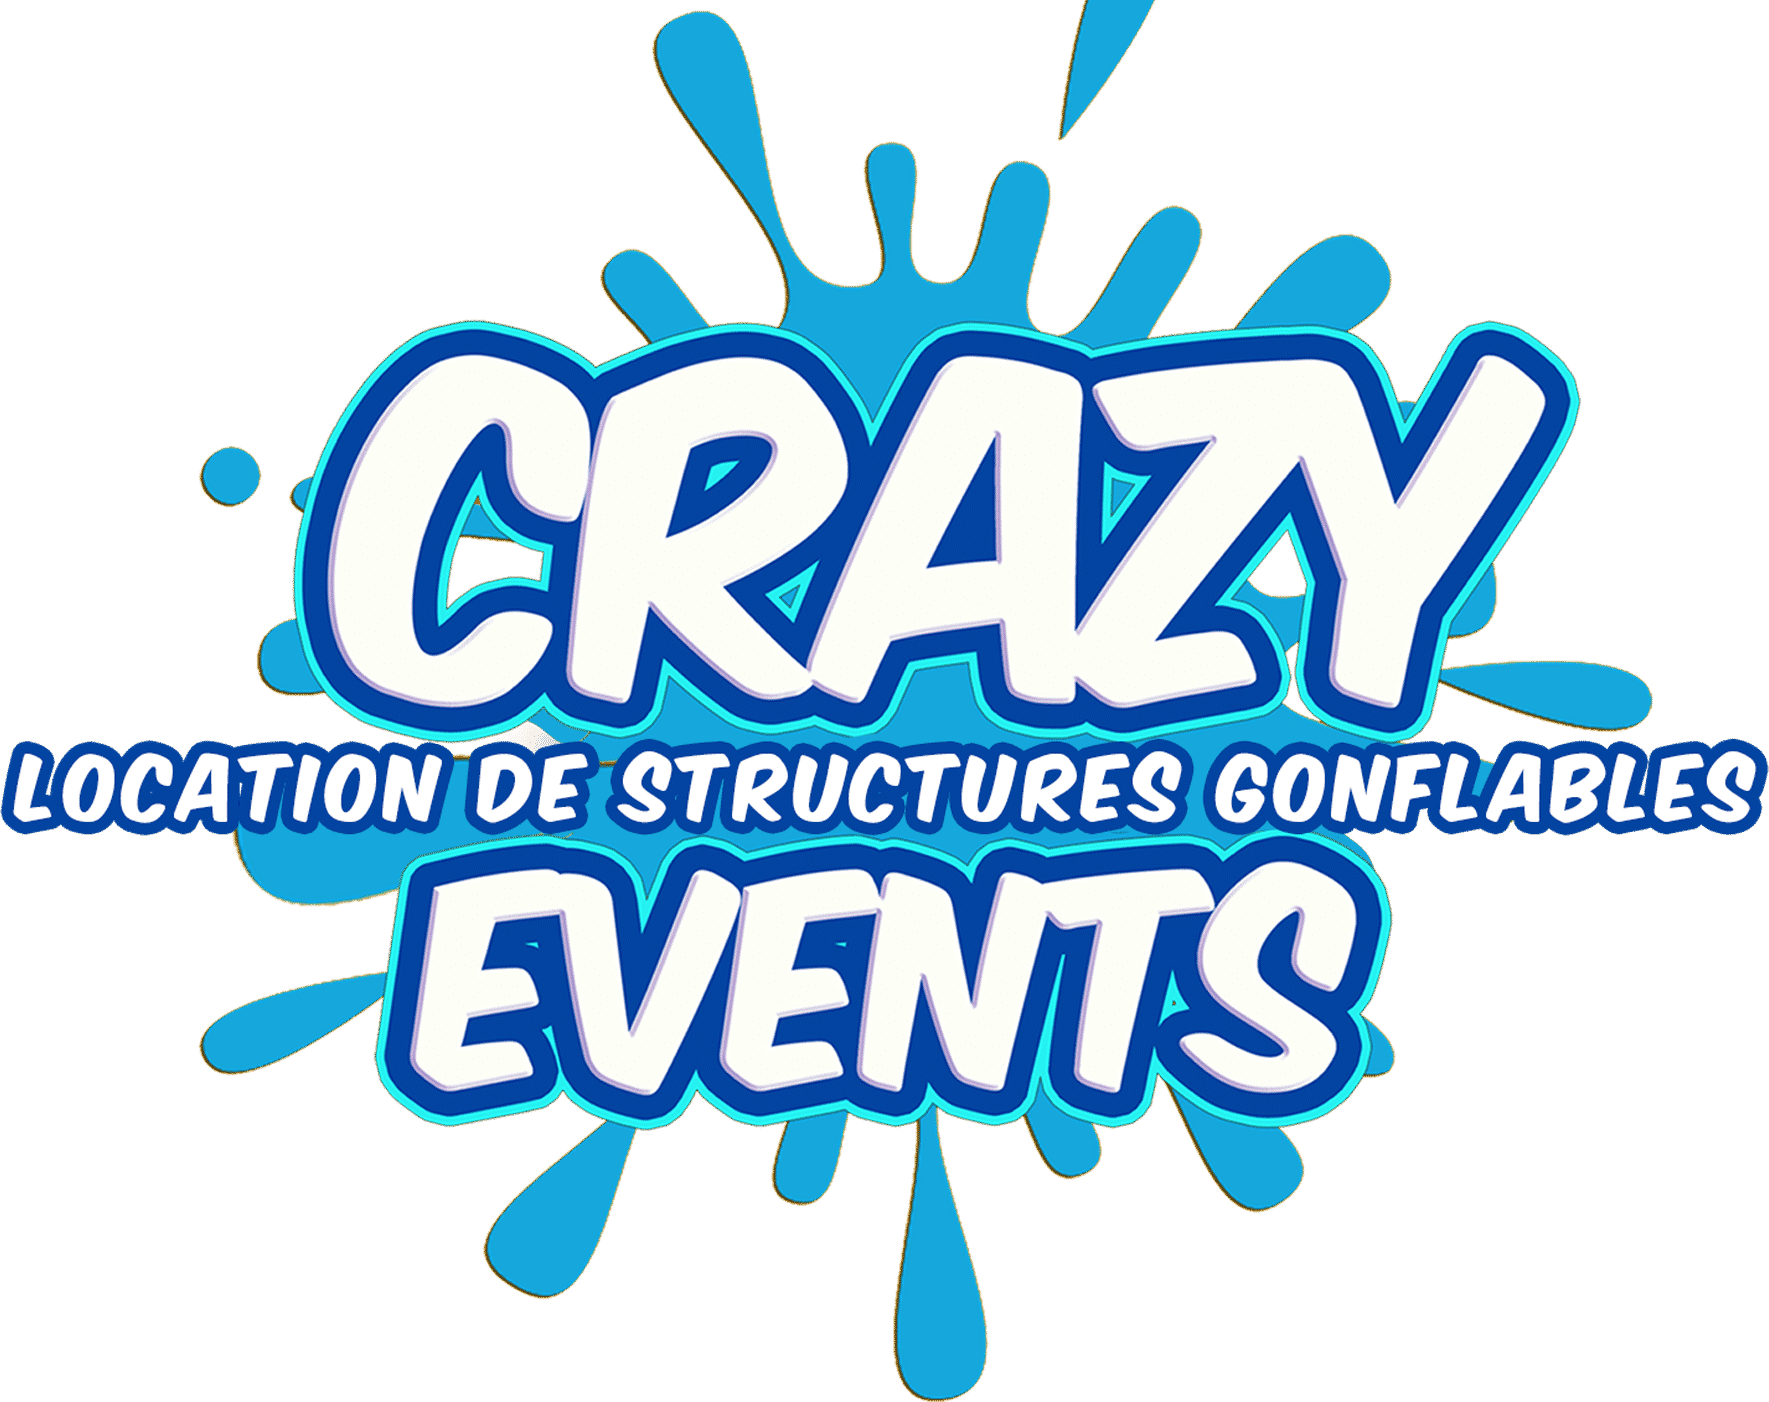 Accueil Crazy events Organisation de grands événements à Montpellier